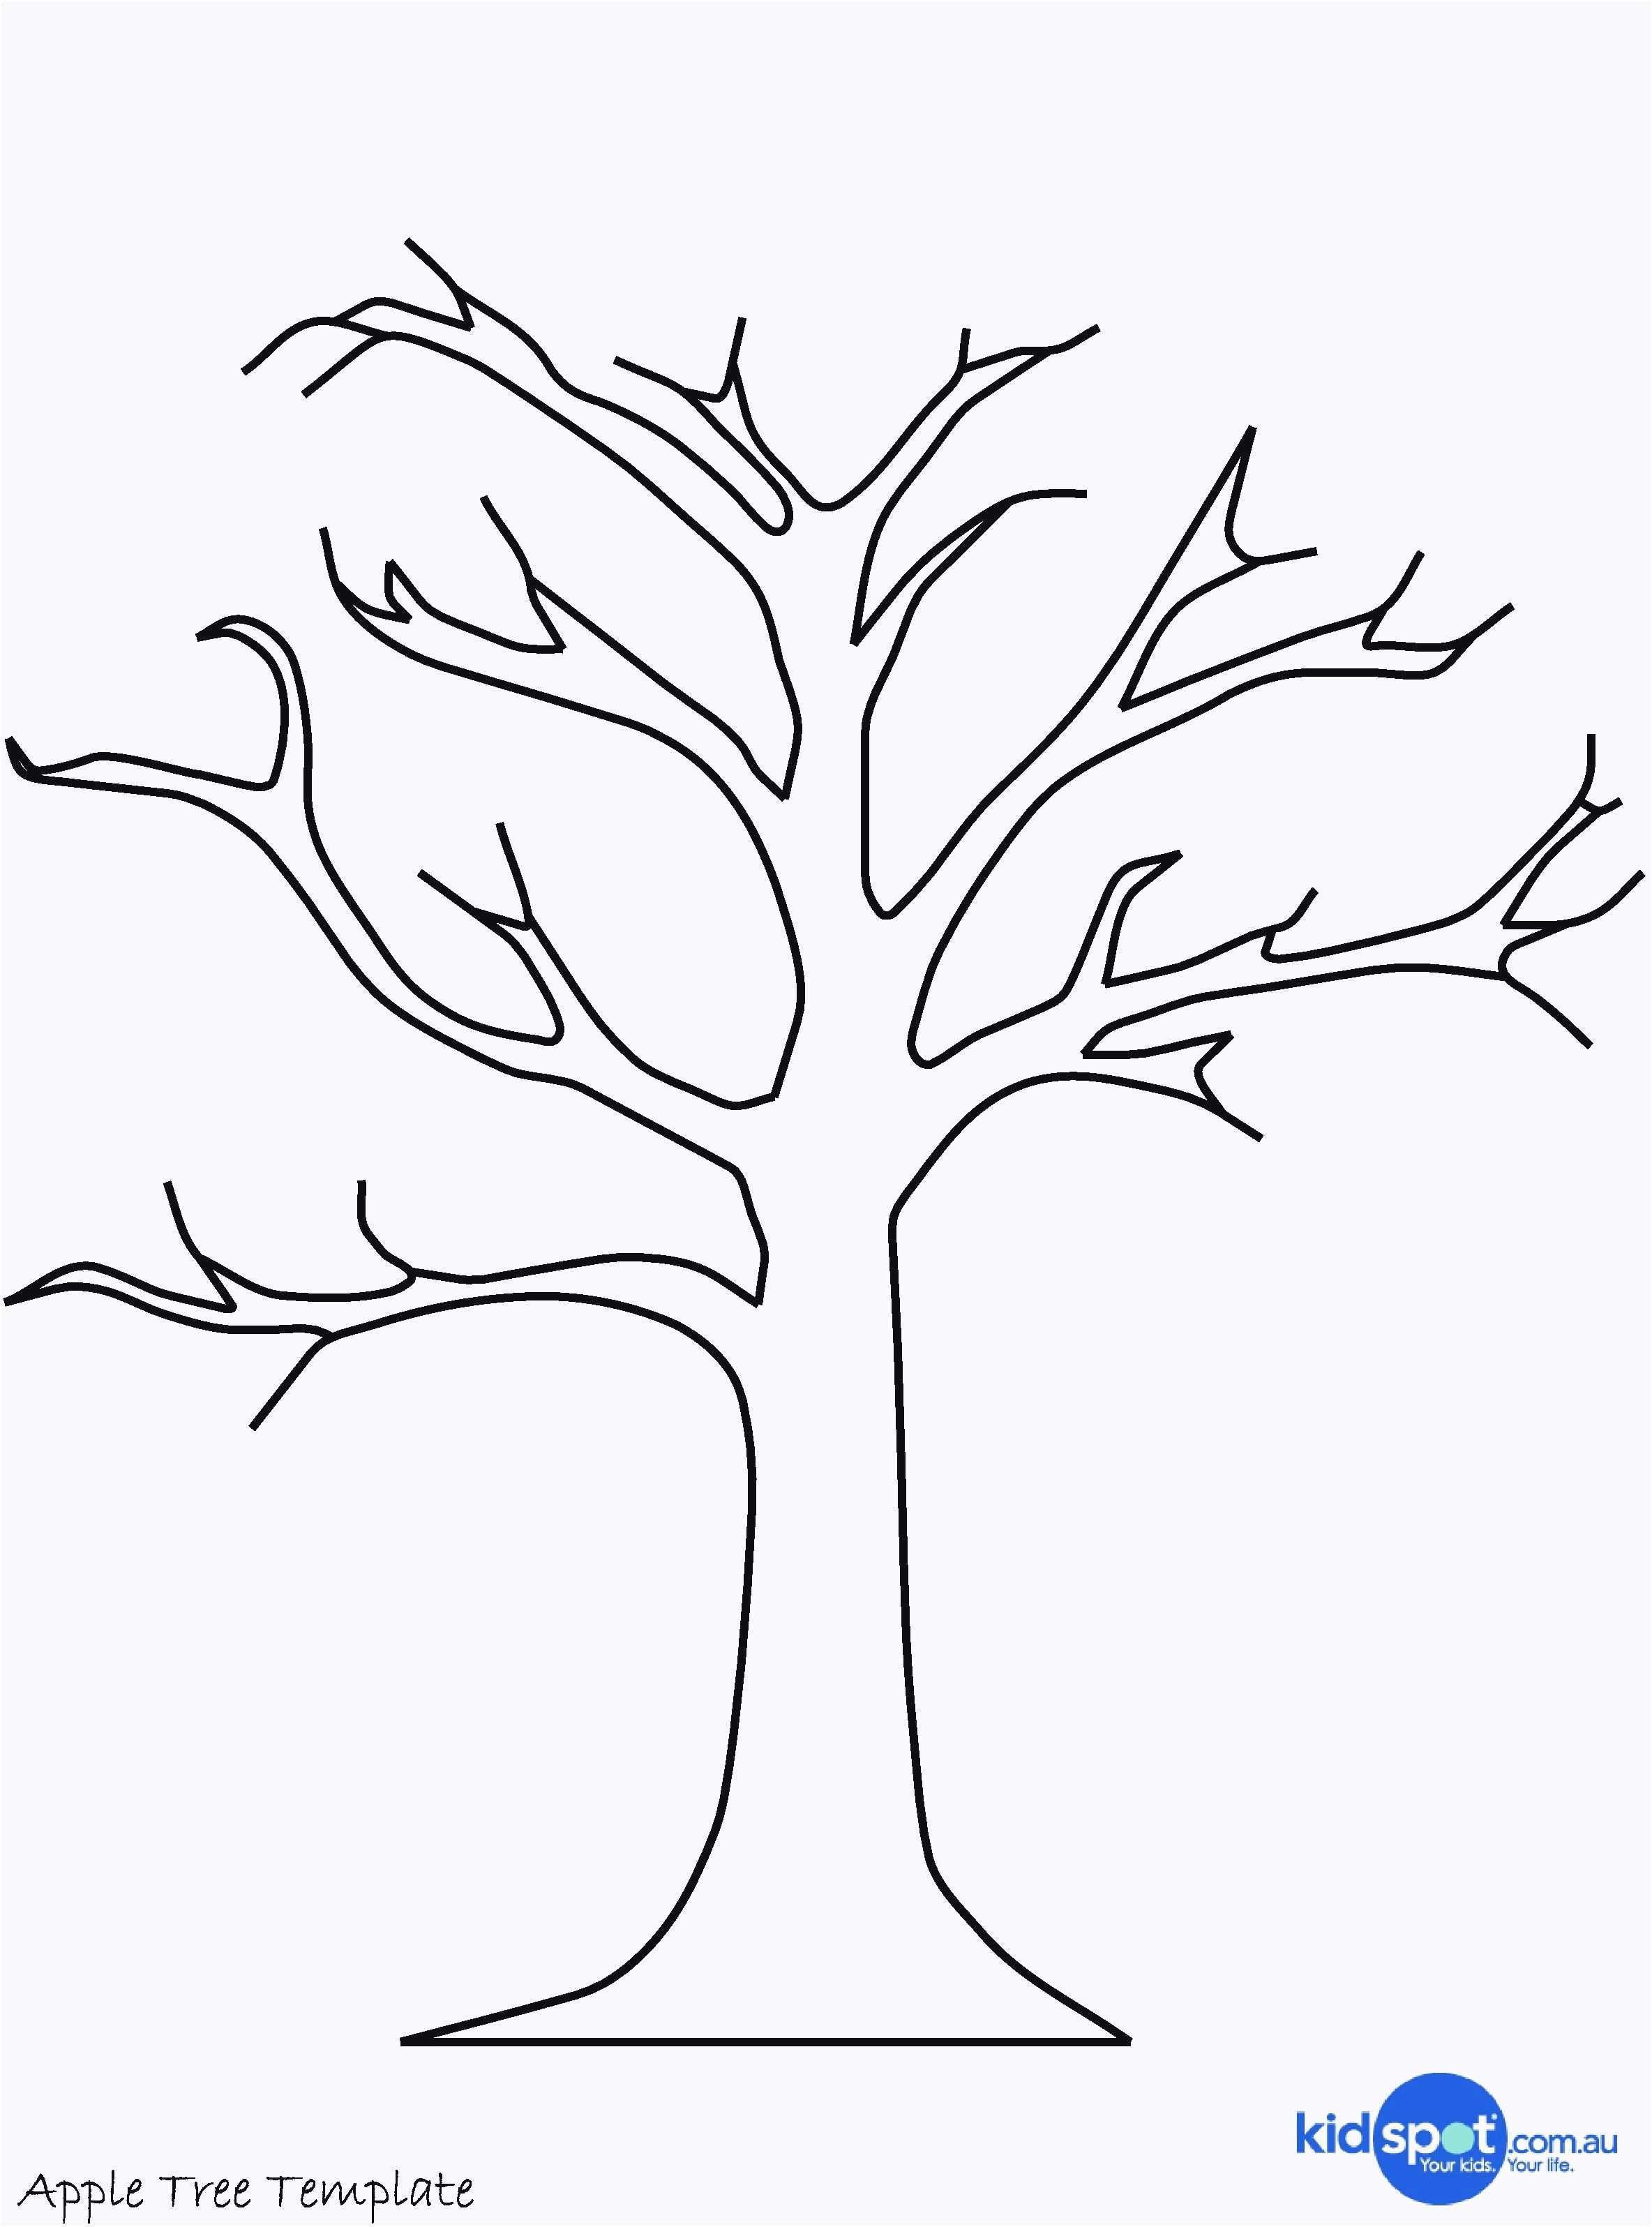 Farbung Malvorlagen Malvorlagenfurkinder Baum Basteln Bastelvorlagen Baum Vorlage